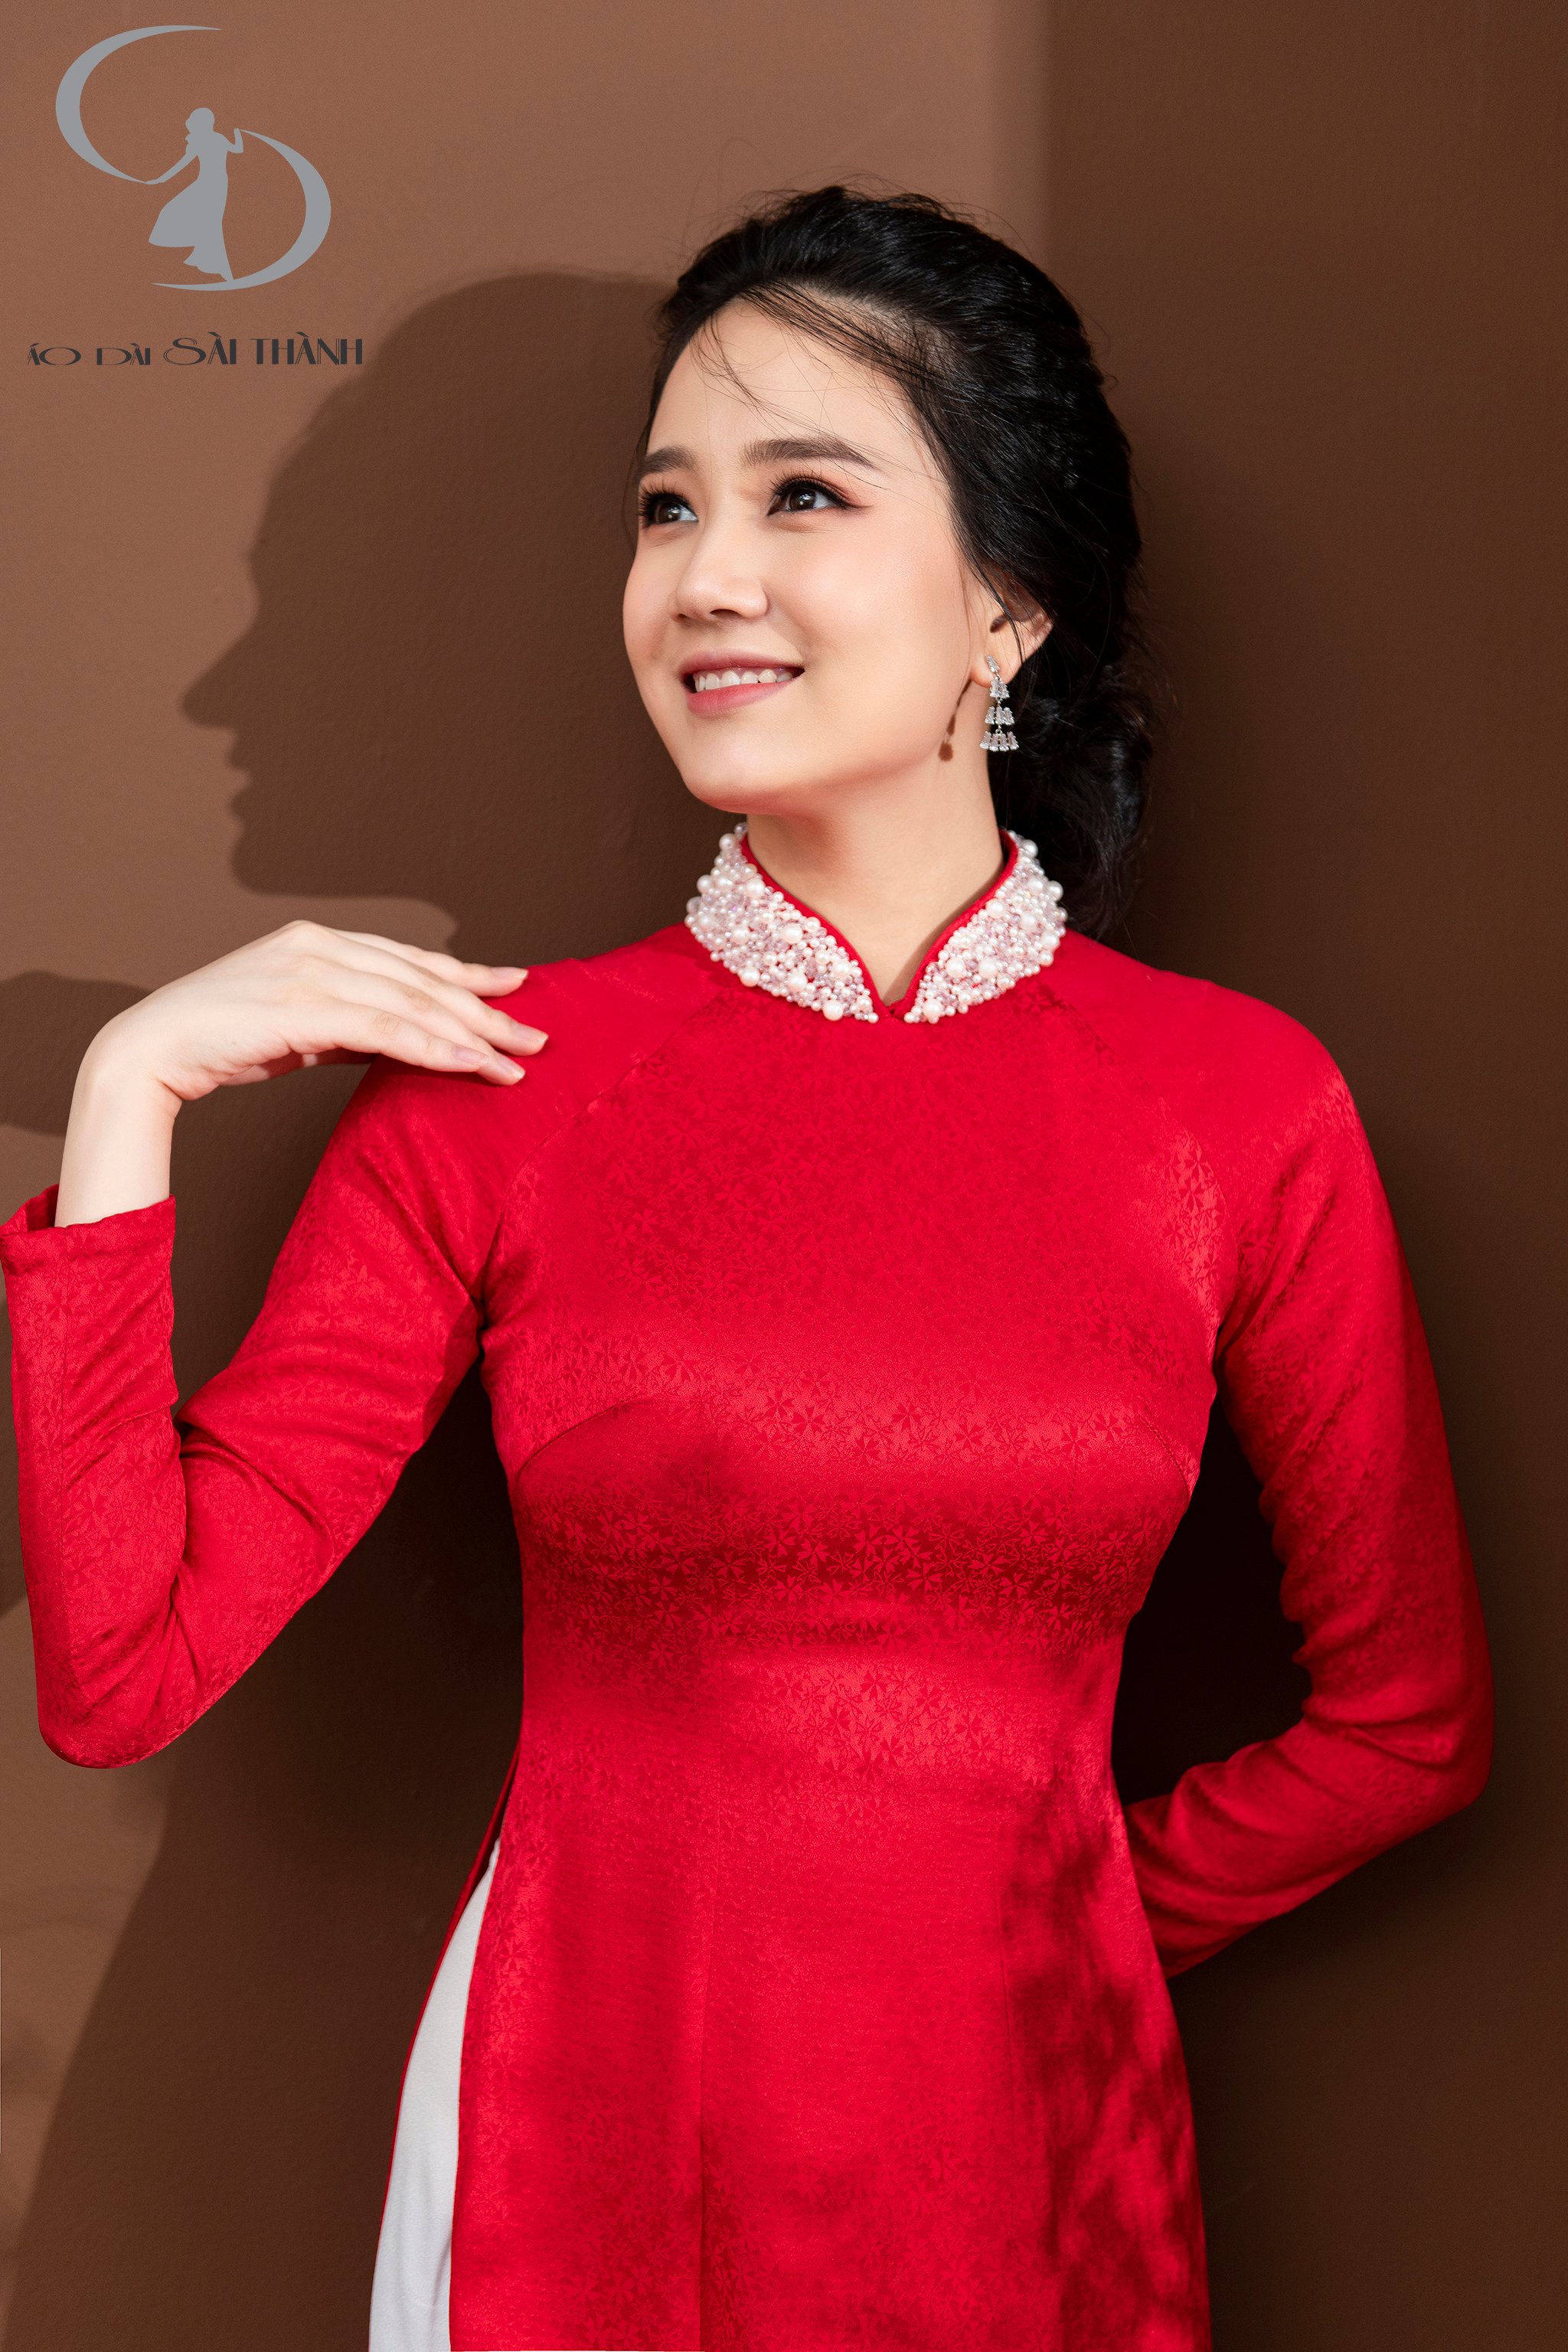 Dẫn đầu xu hướng thời trang áo dài, Áo dài Sài Thành tự hào là một trong só những cửa hàng cung cấp dịch vụ may, bán, cho thuê áo dài chất lượng nhất.